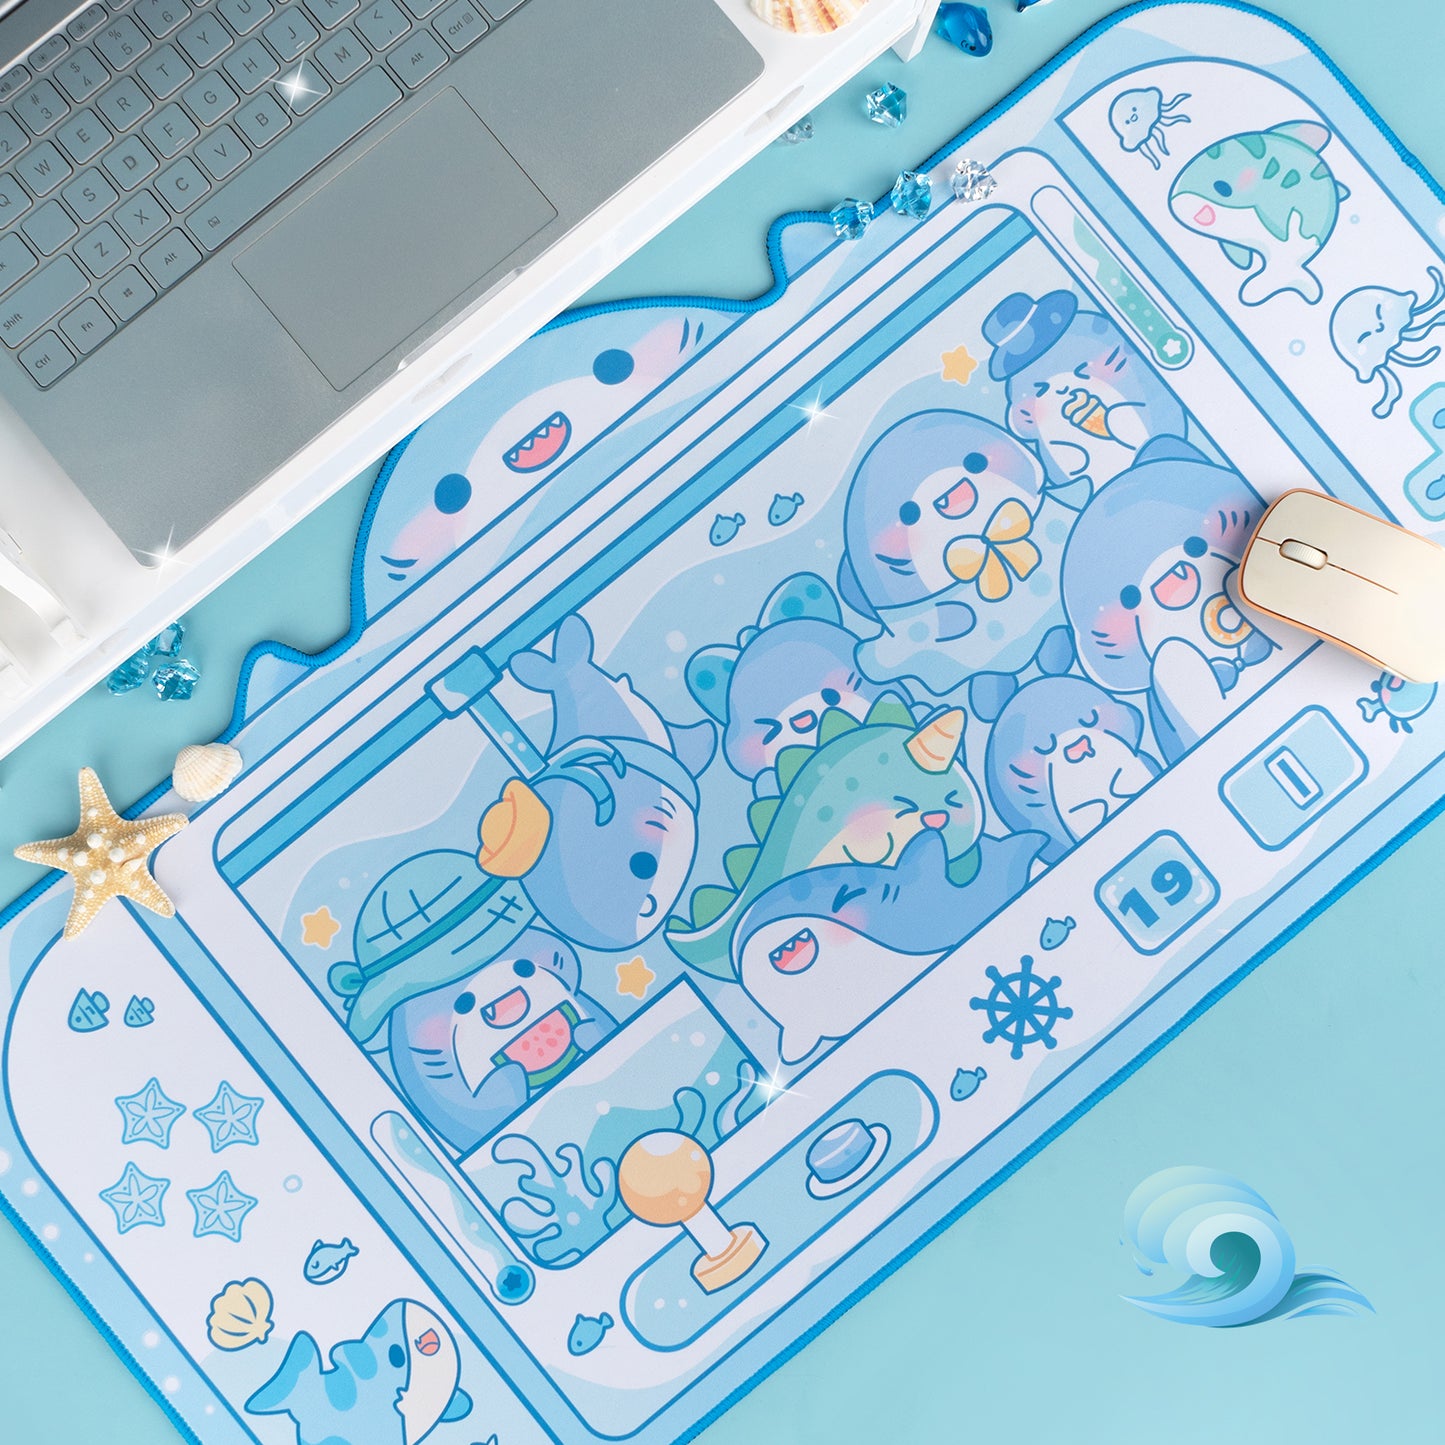 BlingKiyo Shark Large Mouse Pad / Desk Mat